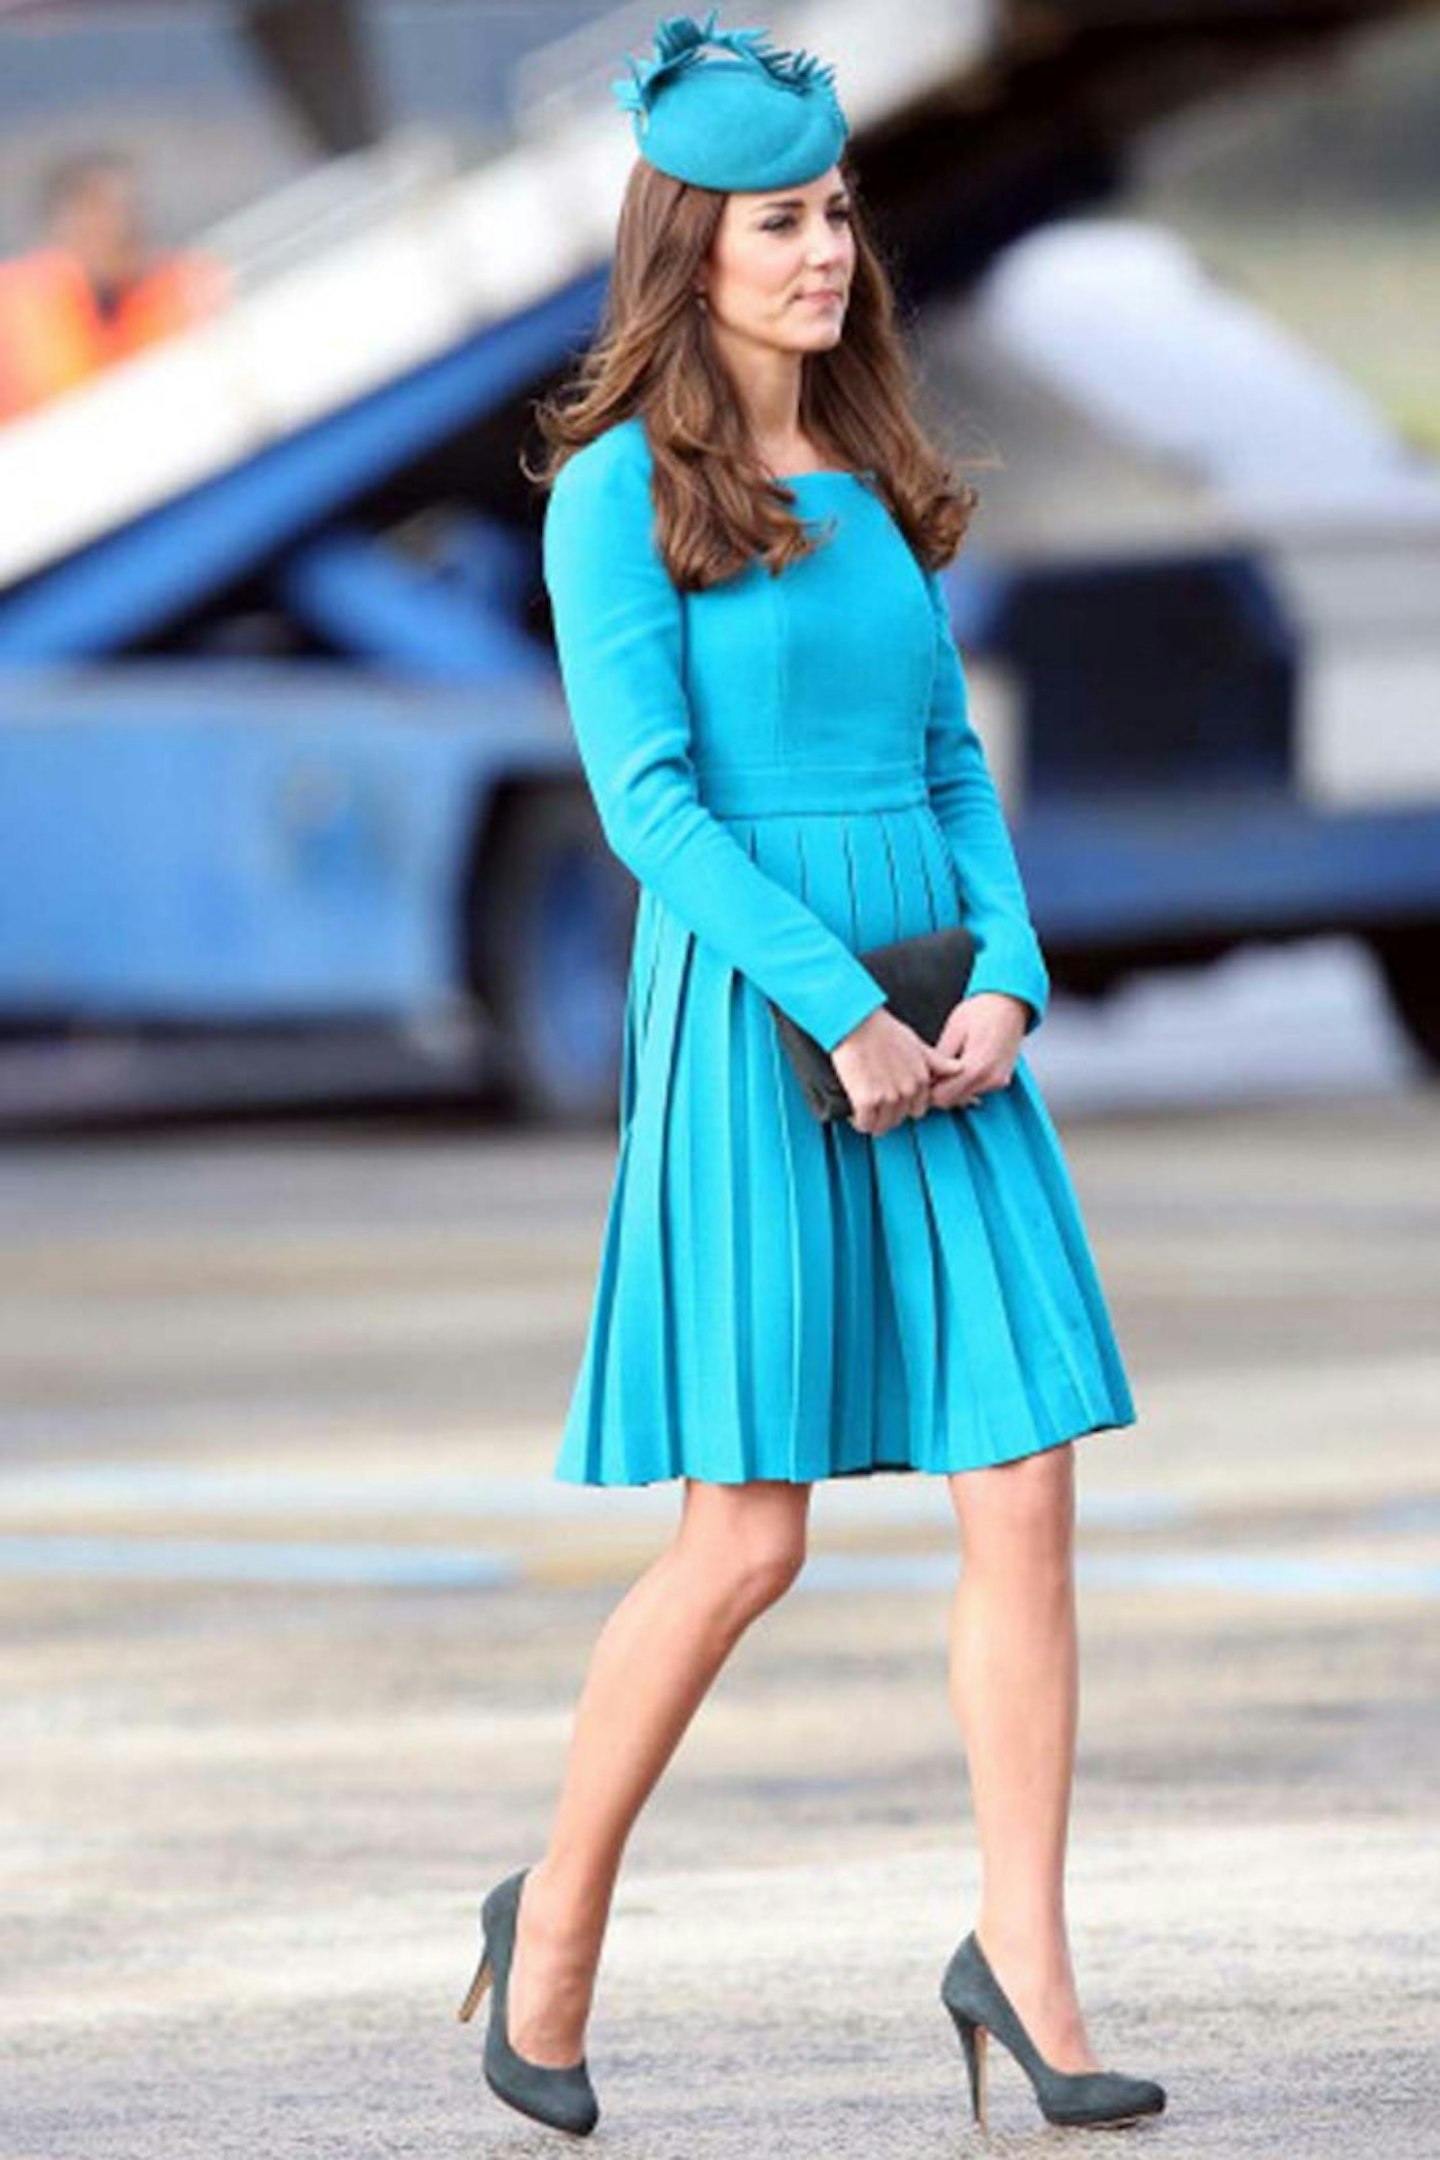 The Duchess of Cambridge in Emilia Wickstead at Dunedin, 13 April 2014